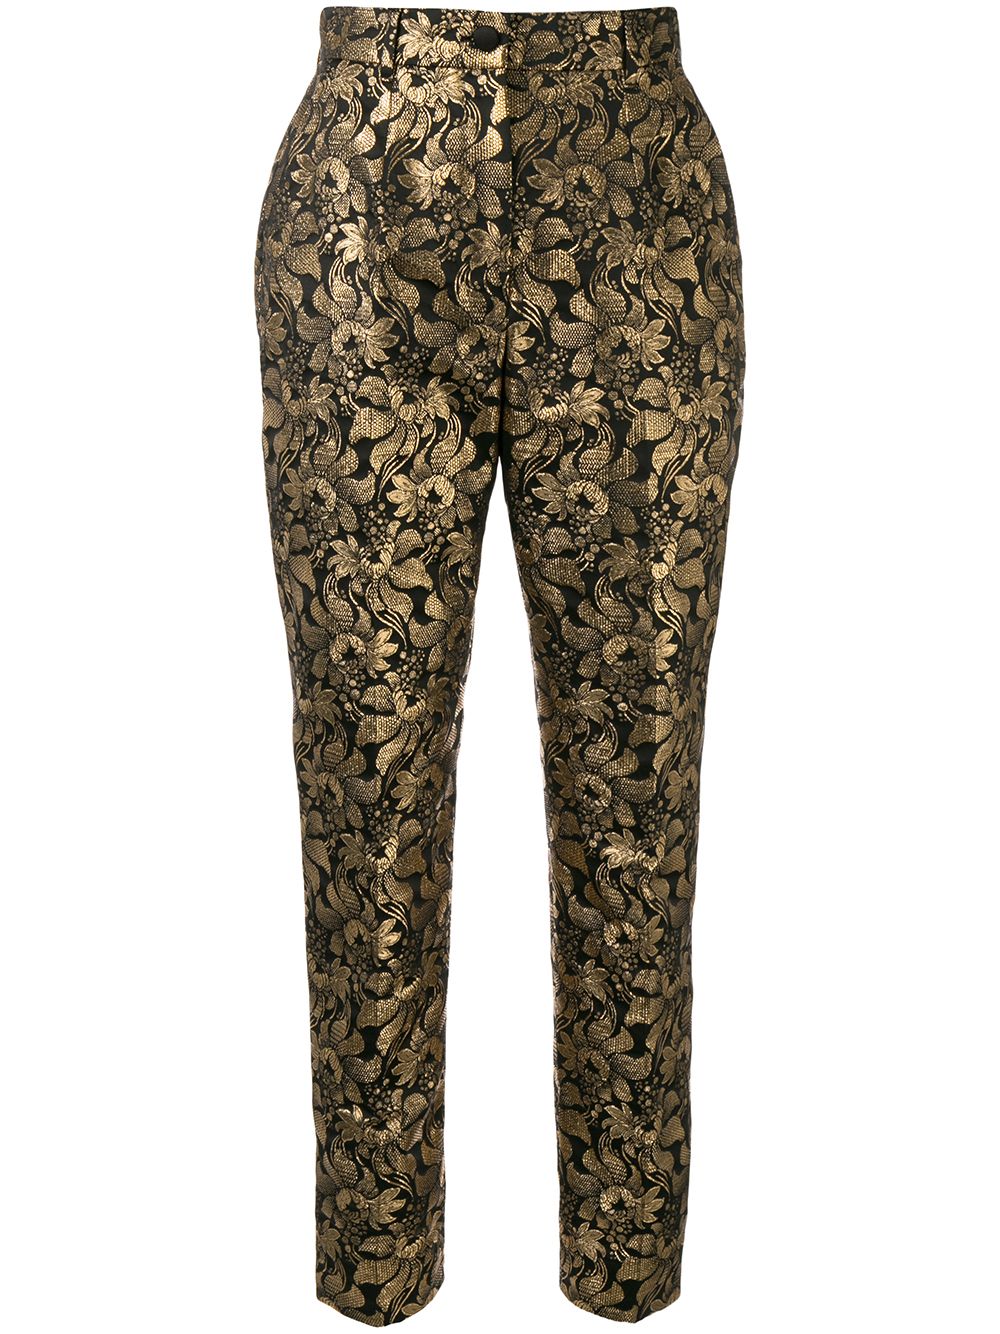 Dolce & Gabbana Lurex Floral Jacquard Trousers - Farfetch